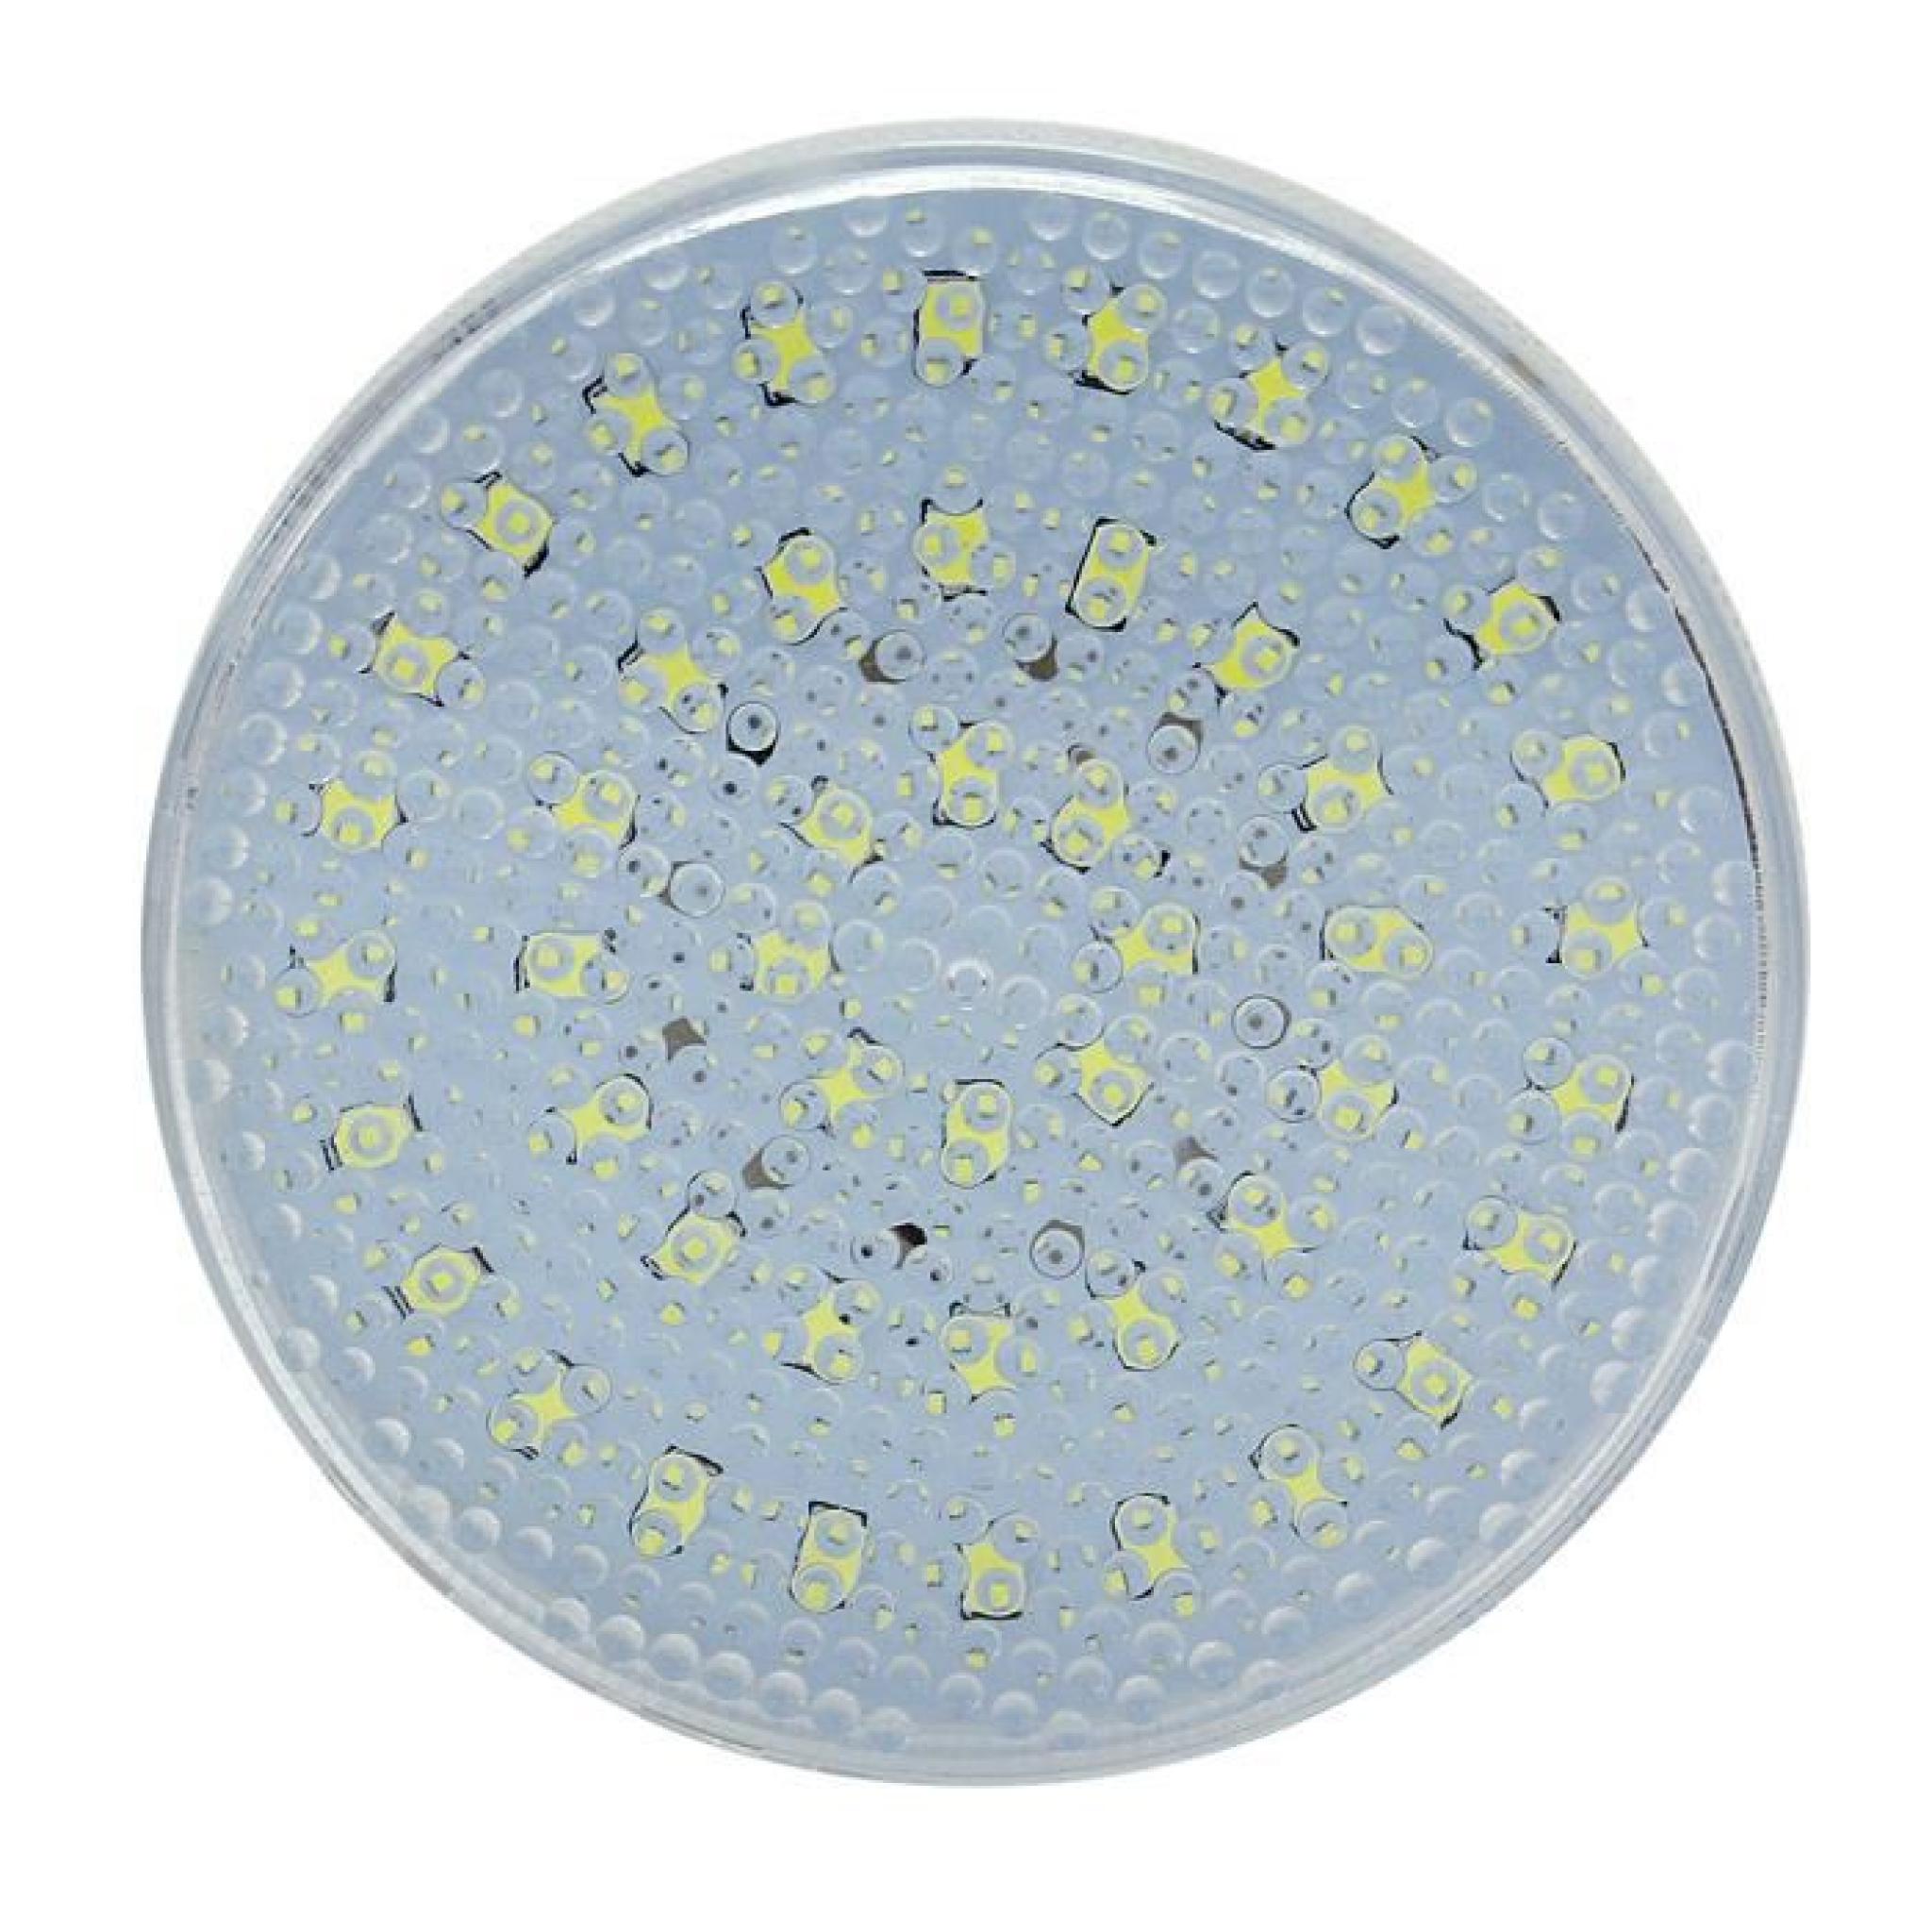 GX53 5W 48 SMD 2835 LED Ampoule Lampe Spot Light Bulb Blanc Eclairage Light pas cher